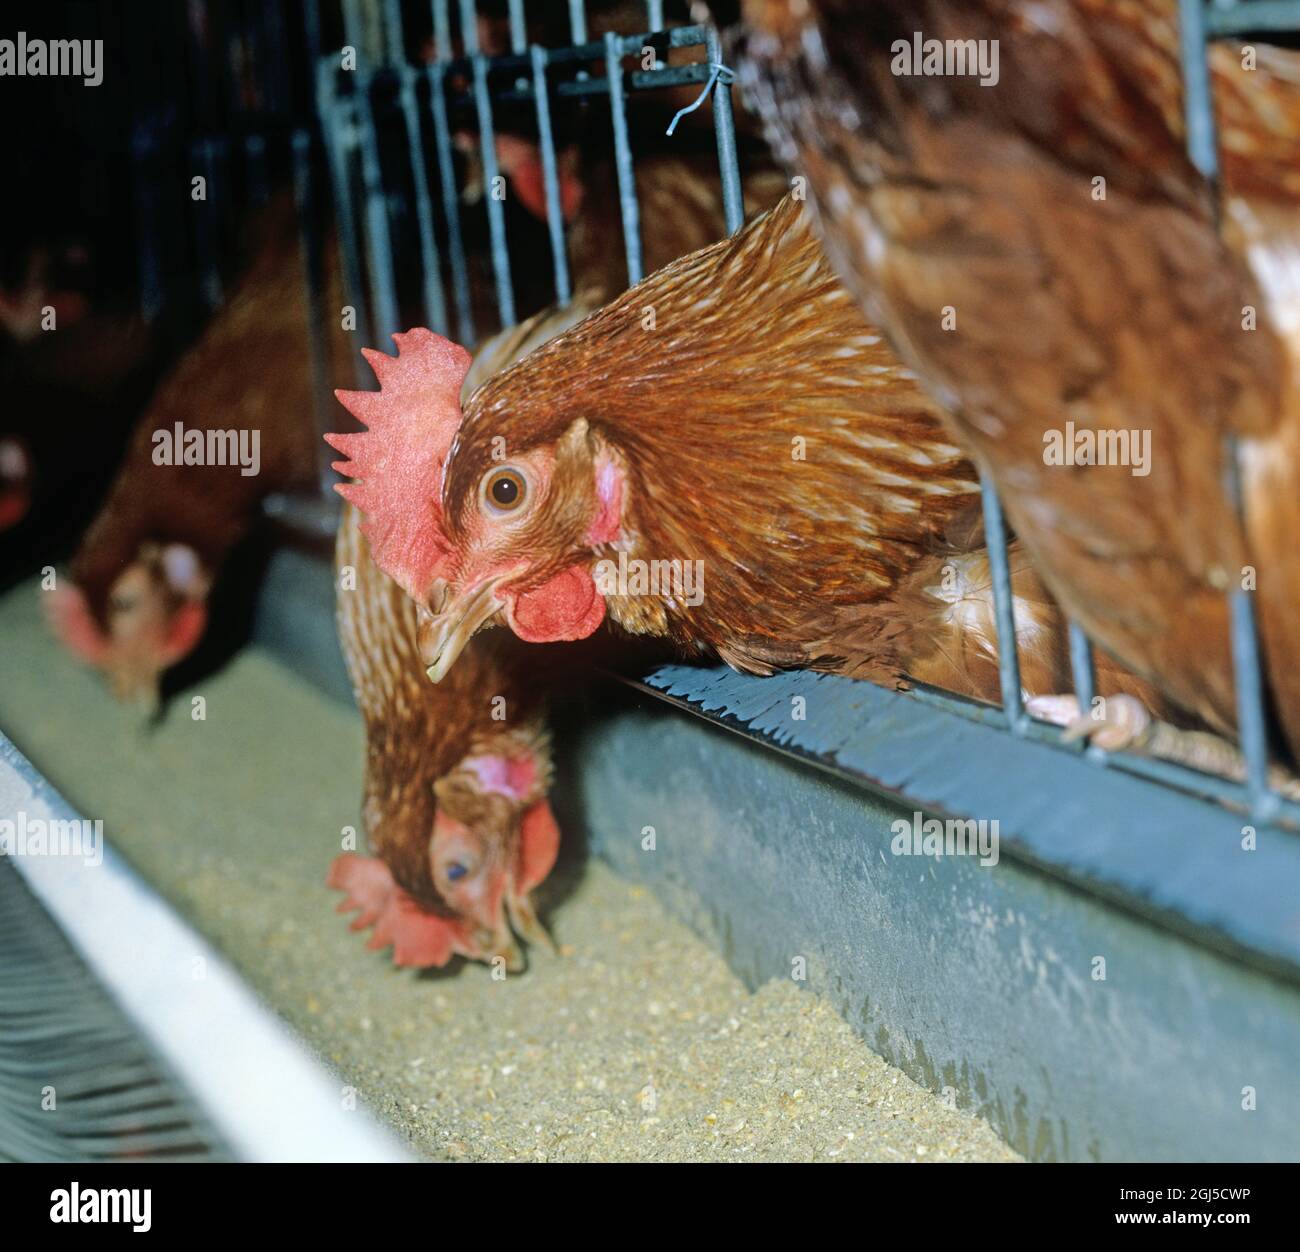 Galline batteria (isa marrone) uova che posano polli in gabbie confinate con una certa perdita di piuma, mostra l'accesso a mangiando trogolo Foto Stock